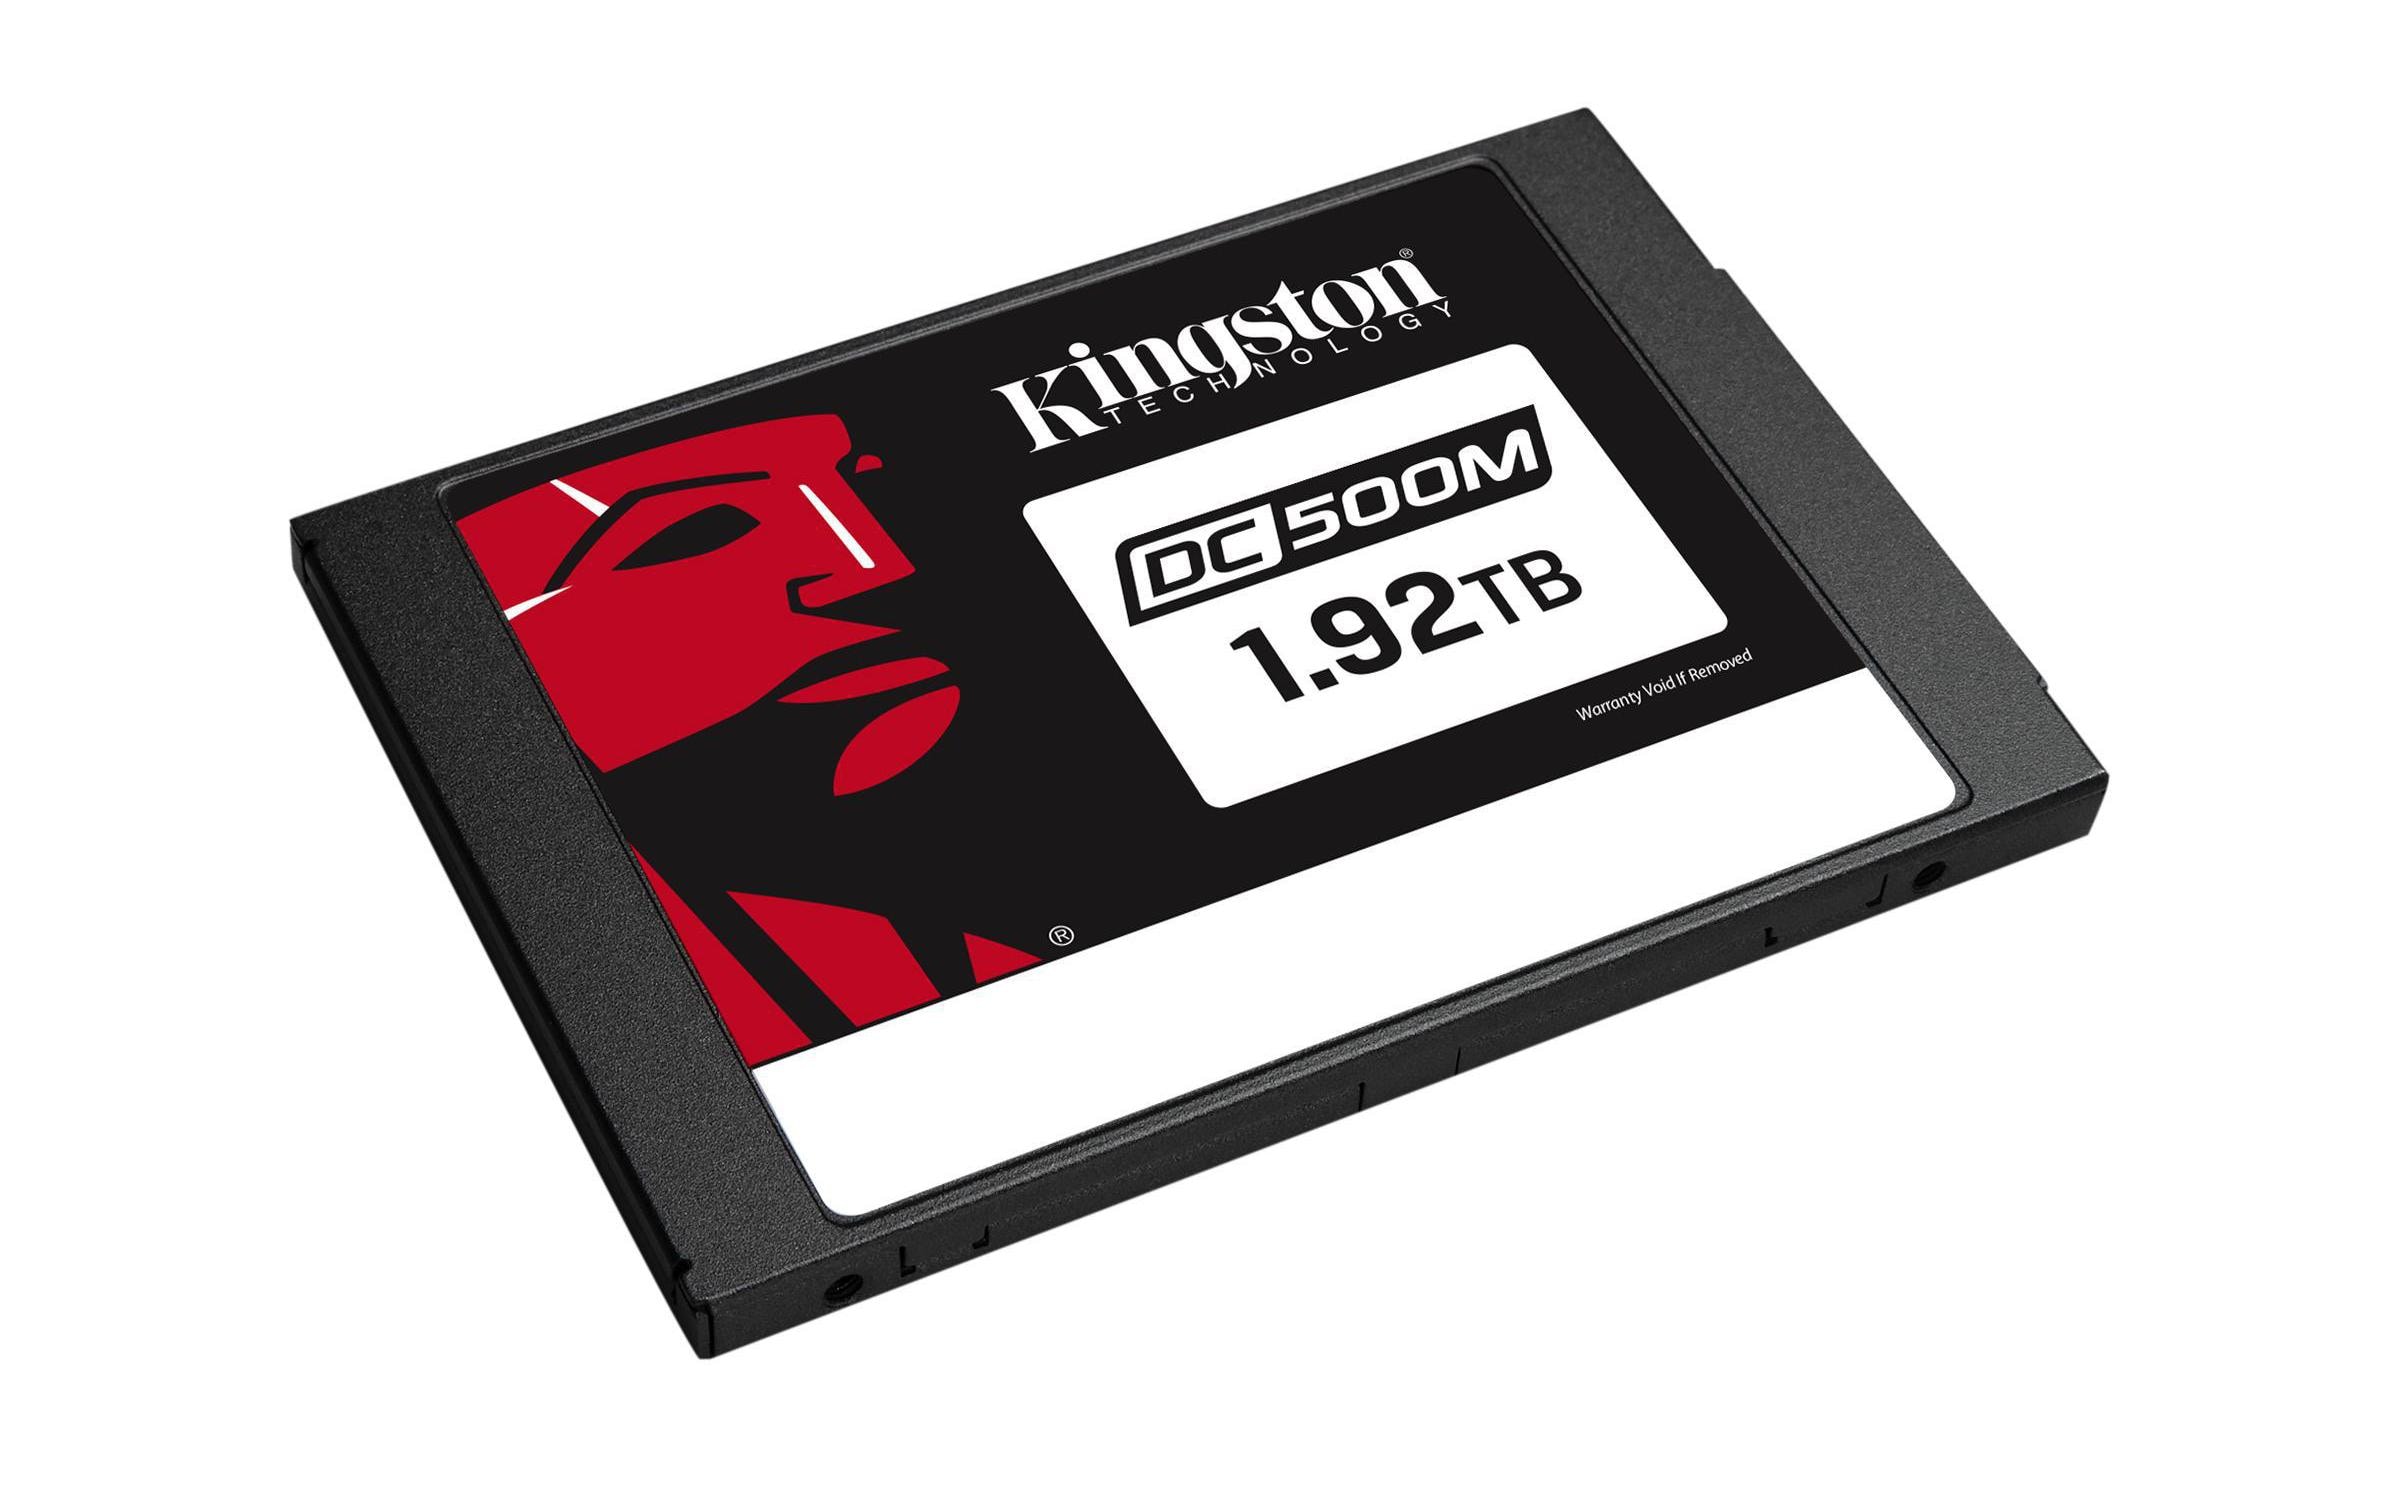 Kingston SSD DC500M 2,5 1920 GB